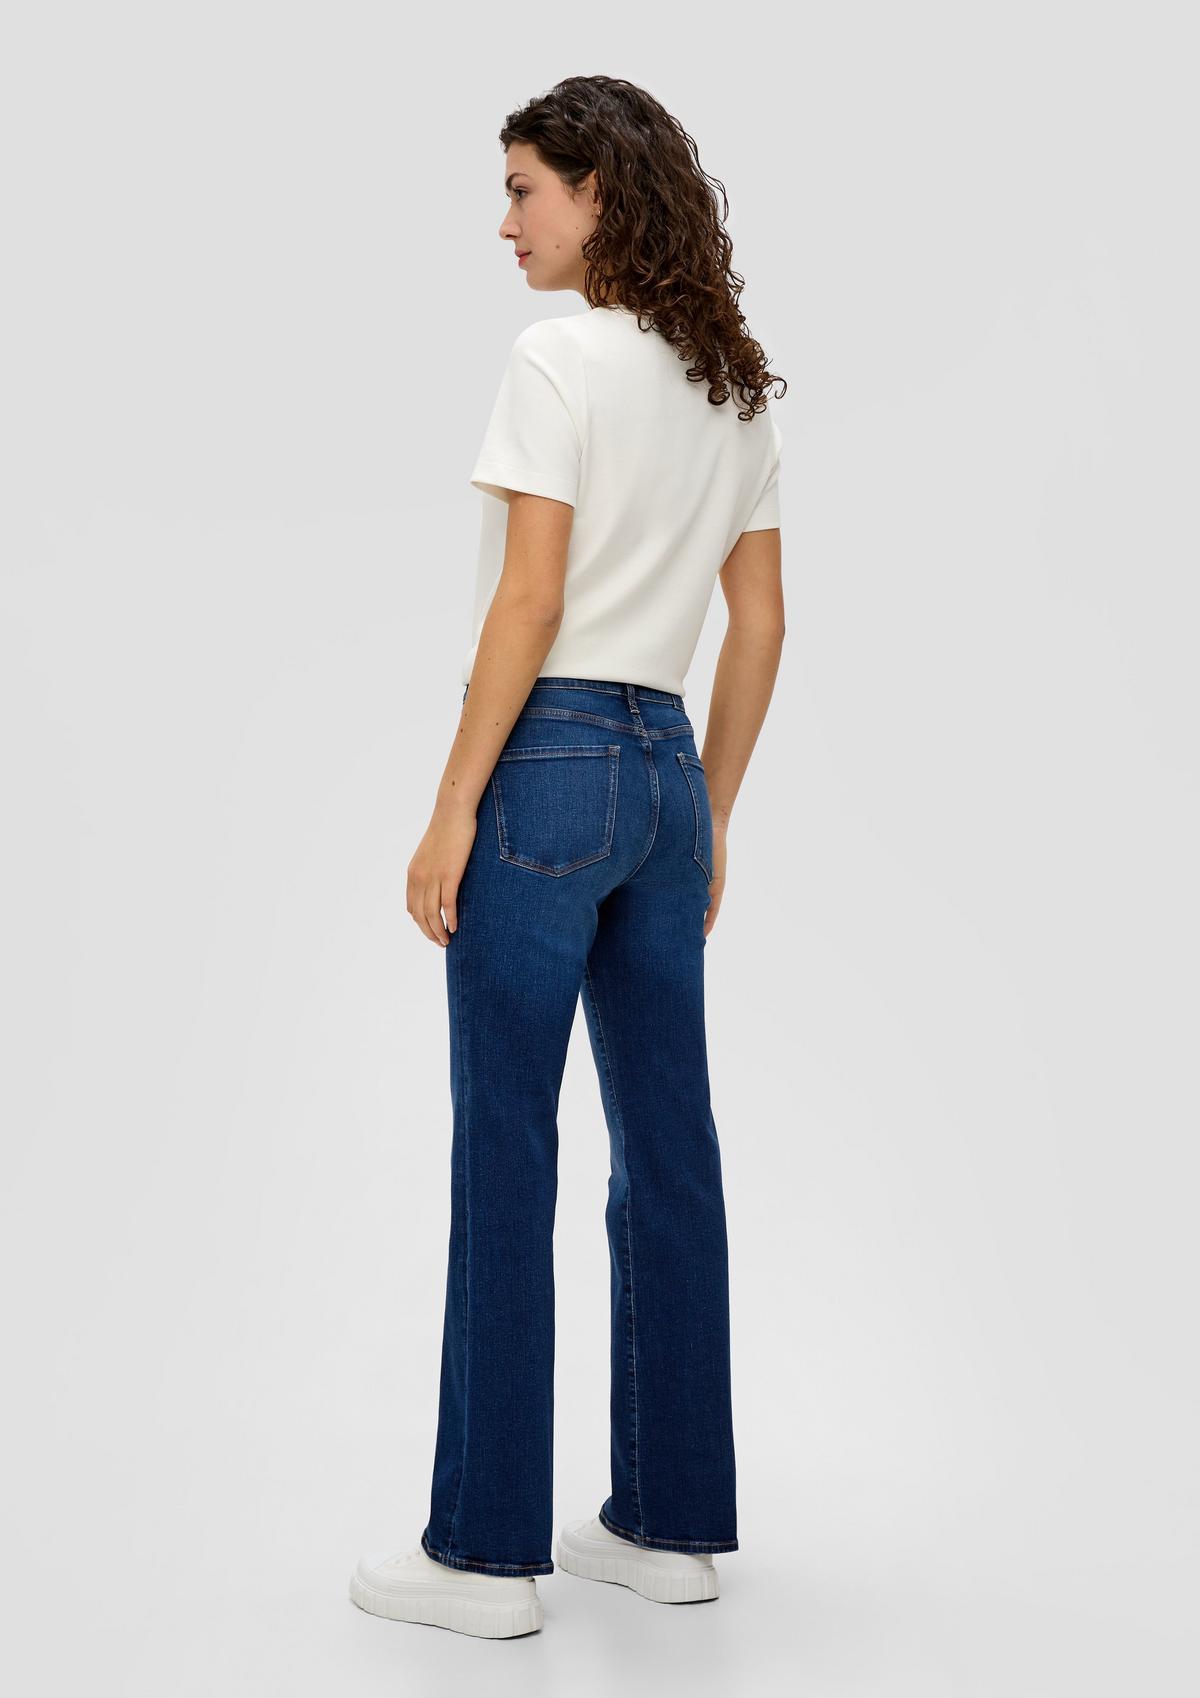 s.Oliver 360° jeans/Jeans hlače/kroj Slim Fit/High Rise/Flared Leg